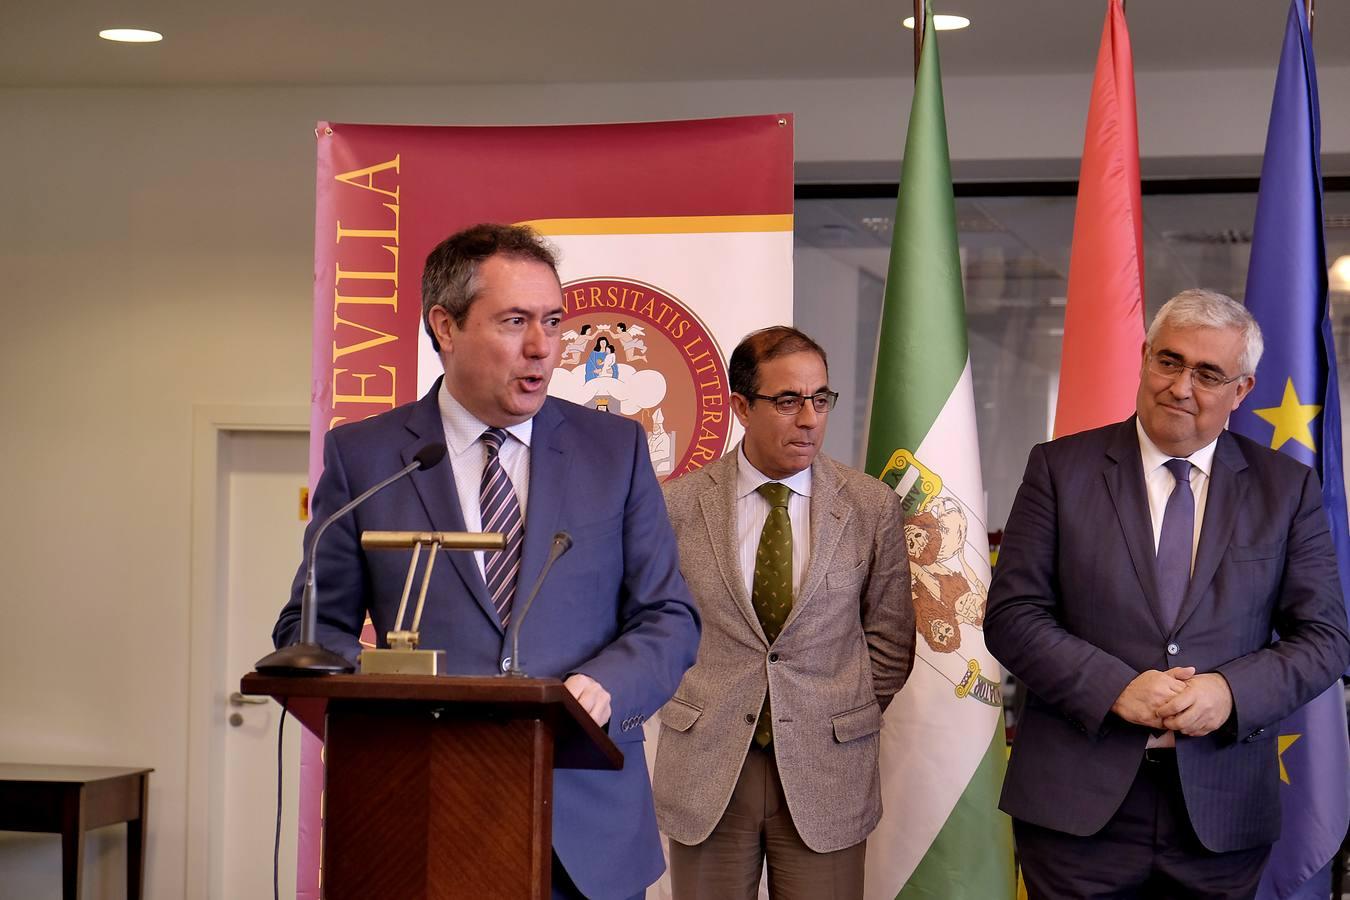 La Universidad de Sevilla inaugura su nueva biblioteca